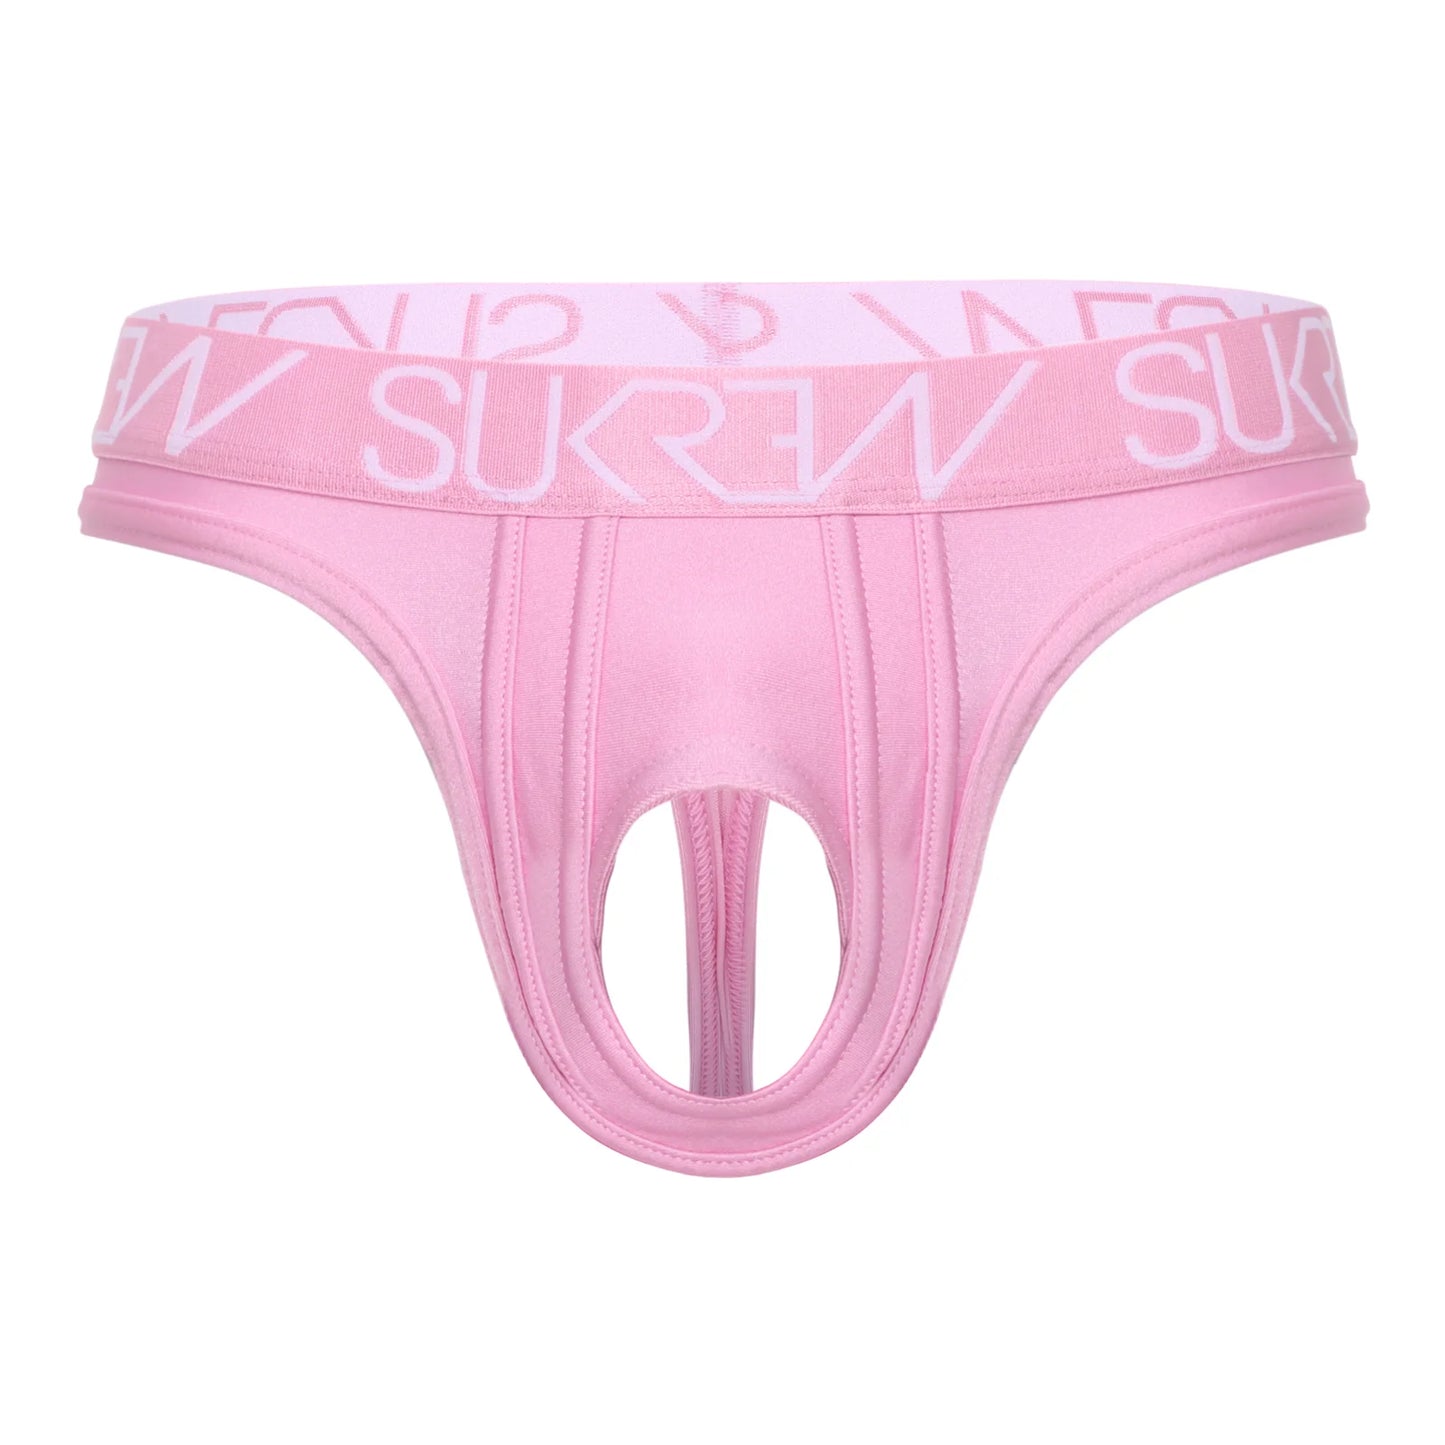 SUKREW - U Style Classic Thong - Soft Pink